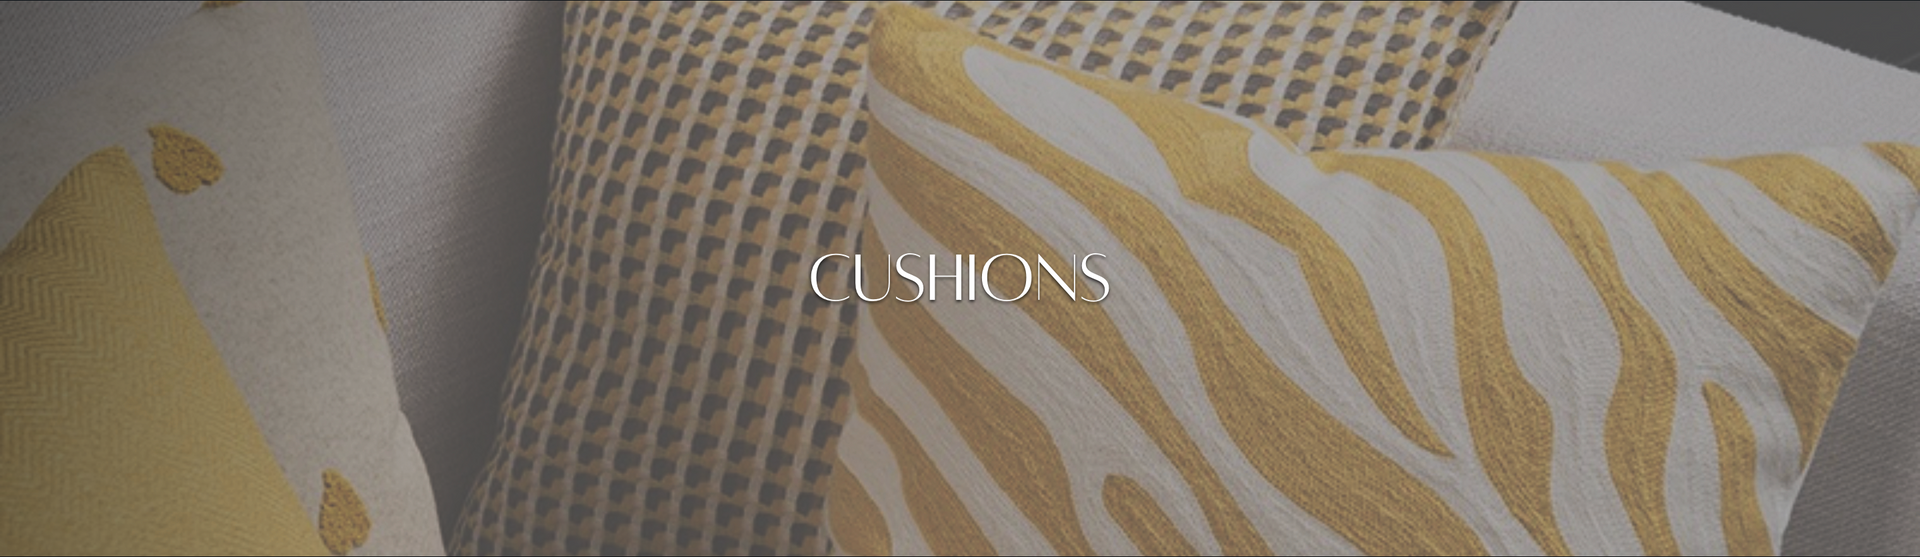 Cushions - Embellished